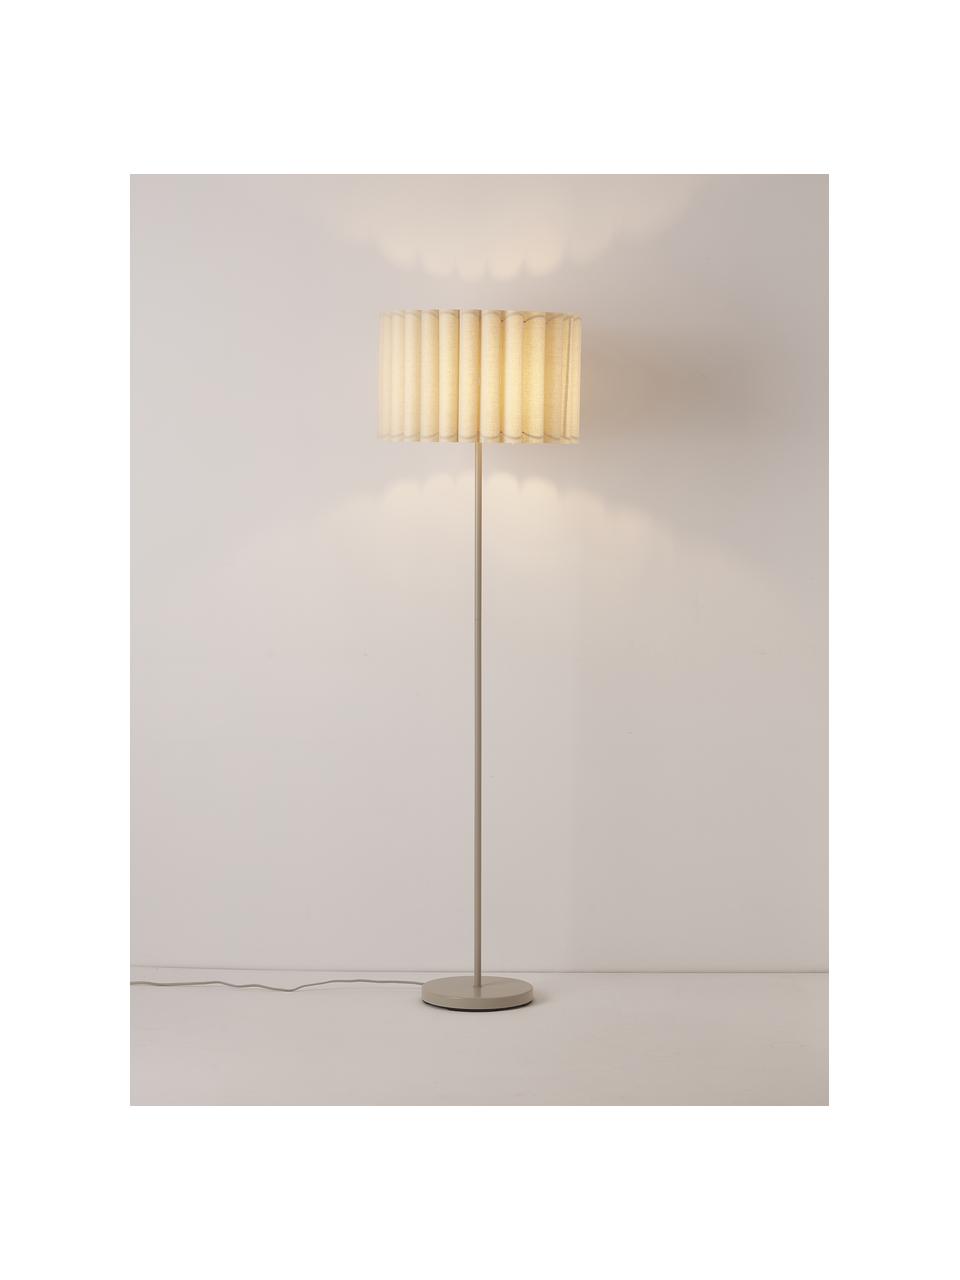 Lámpara de pie de lino Lucina, Pantalla: lino, Estructura: metal, Cable: cubierto en tela, Beige, Ø 45 x Al 152 cm